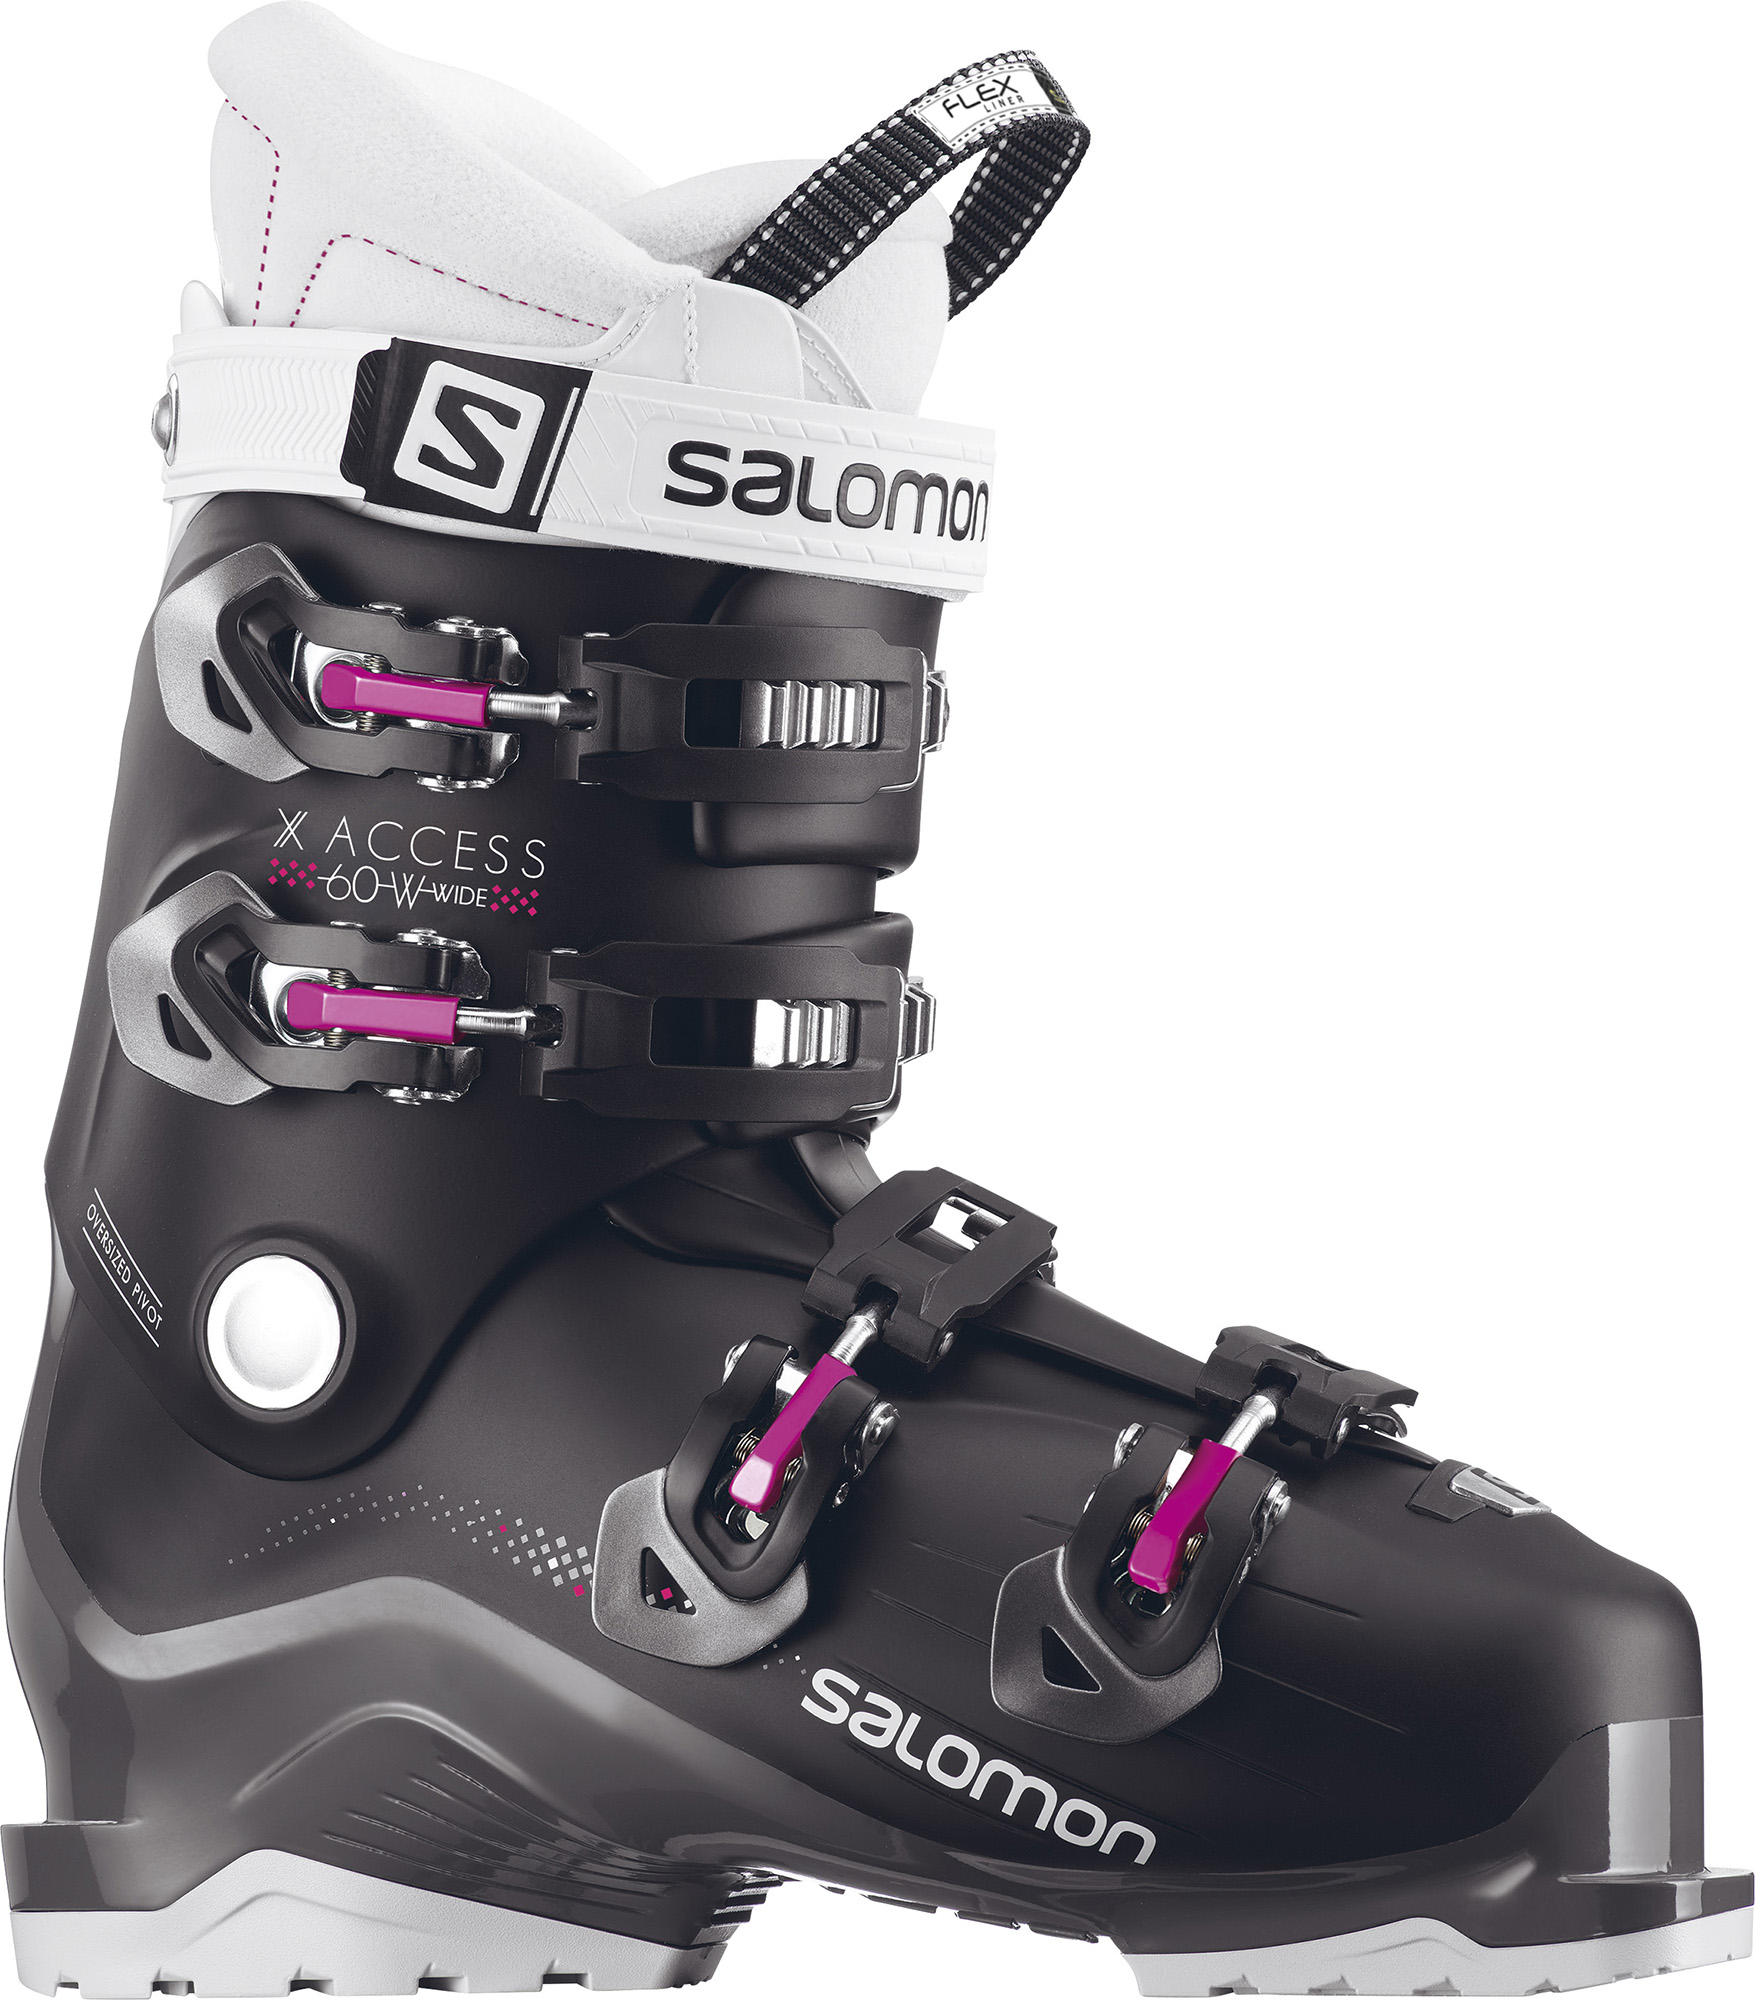 Salomon Ботинки горнолыжные женские Salomon X Access 60, размер 39.5